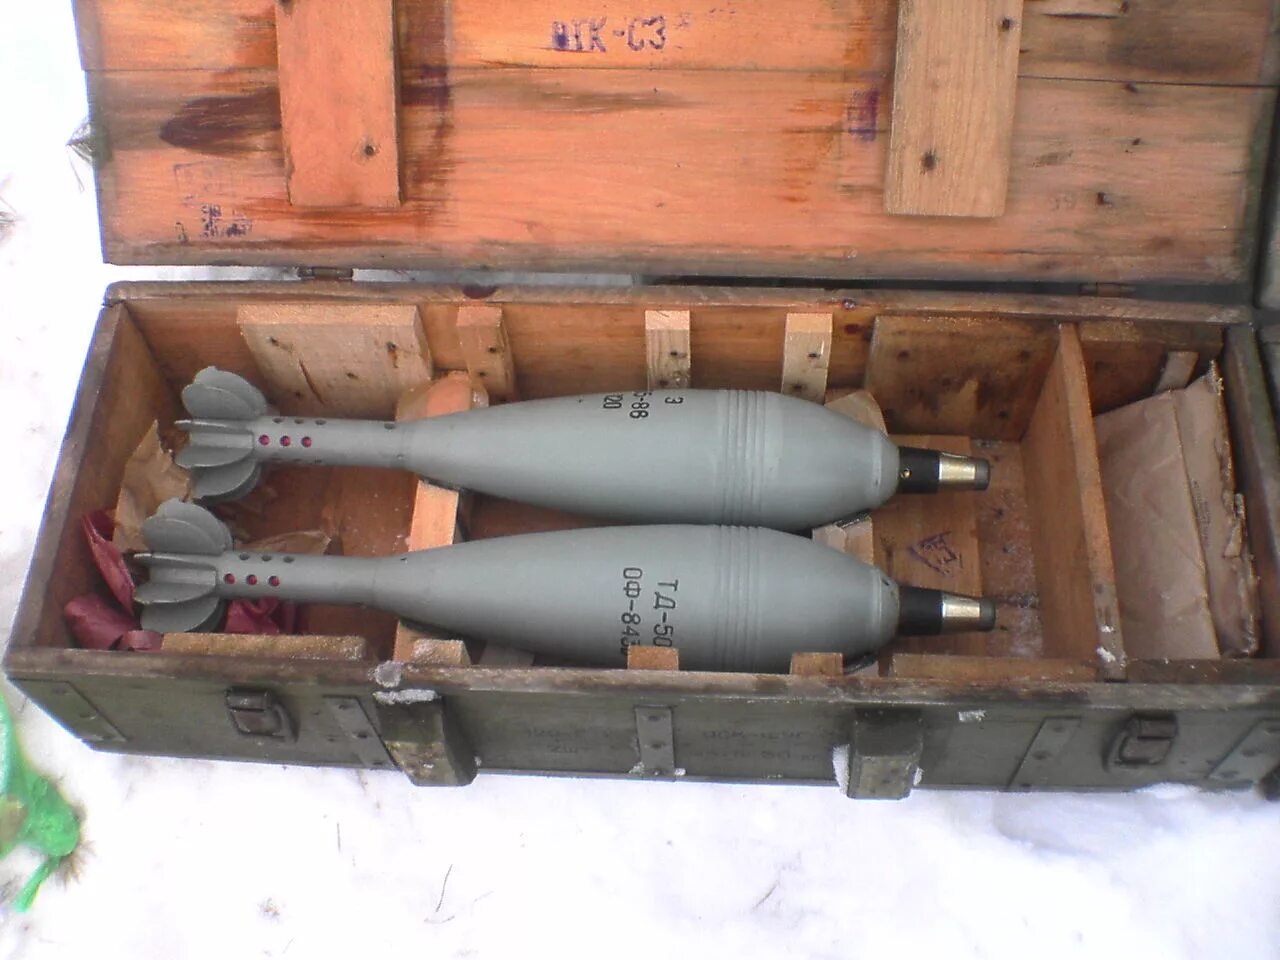 Калибр 122 мм снаряд. Ящик для взрывателей 120 мм миномета. 120 Мм мины в ящике. Укупорка 120 мм мин. Б а 2 75 12